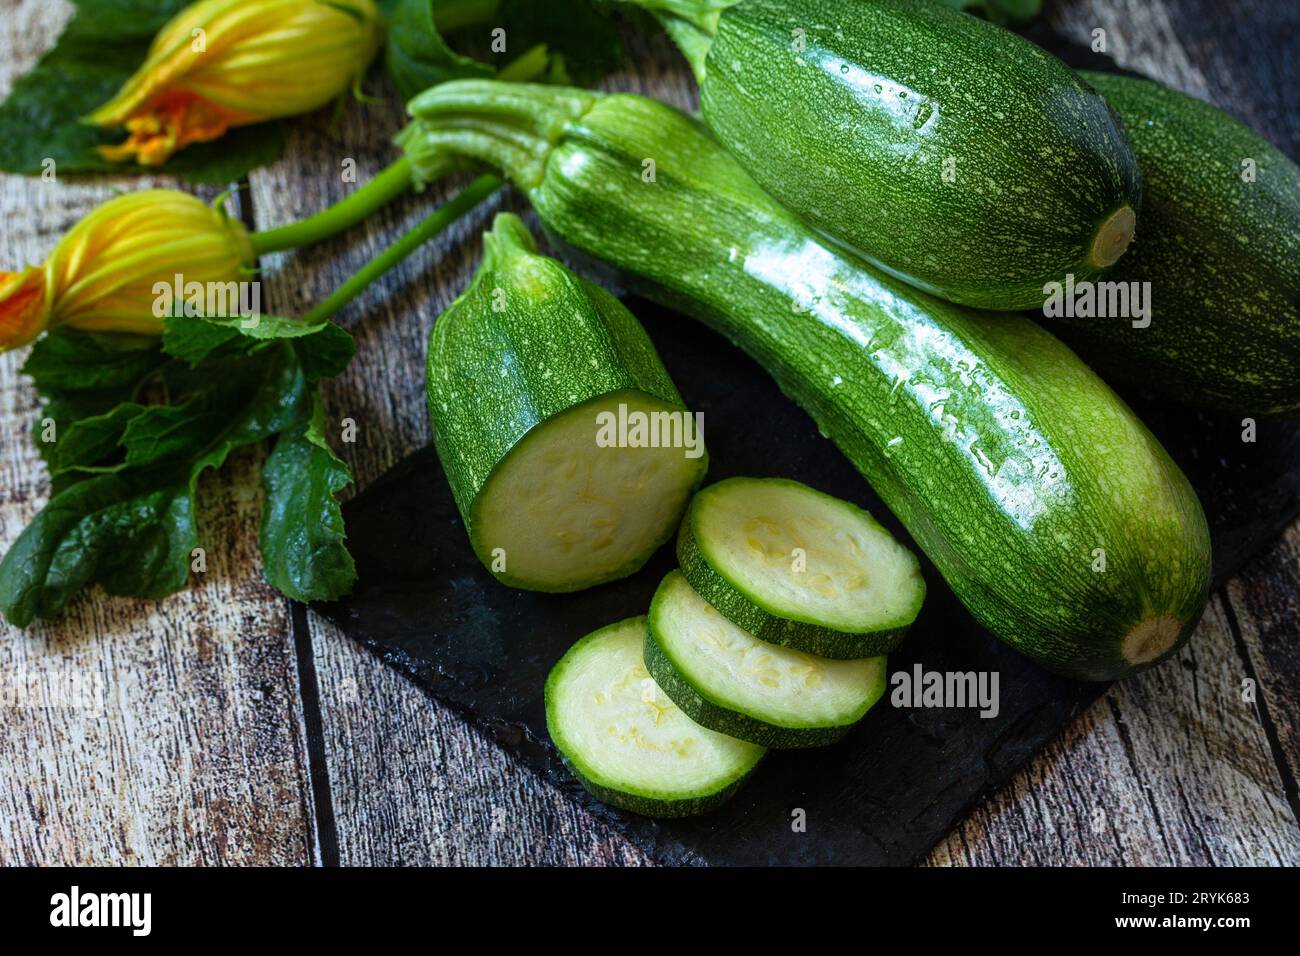 Ernte von Zucchini. Gesunde, ungekochte, frische, grüne Zucchini auf einem hölzernen Küchentisch. Stockfoto